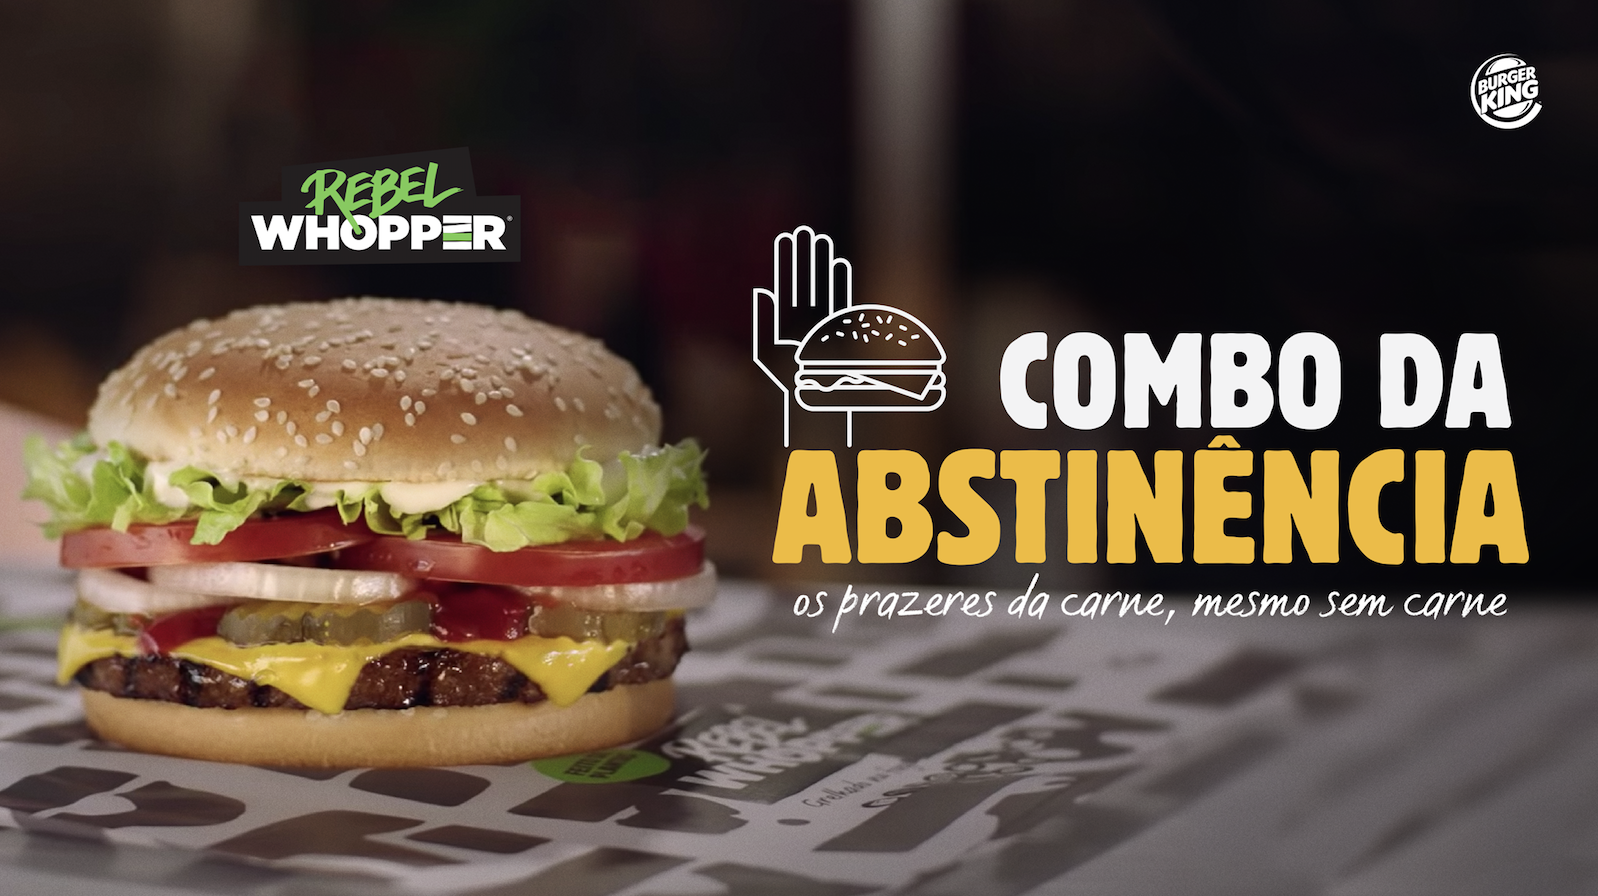 Burger King sente o Trend e lança Combo da Abstinência  